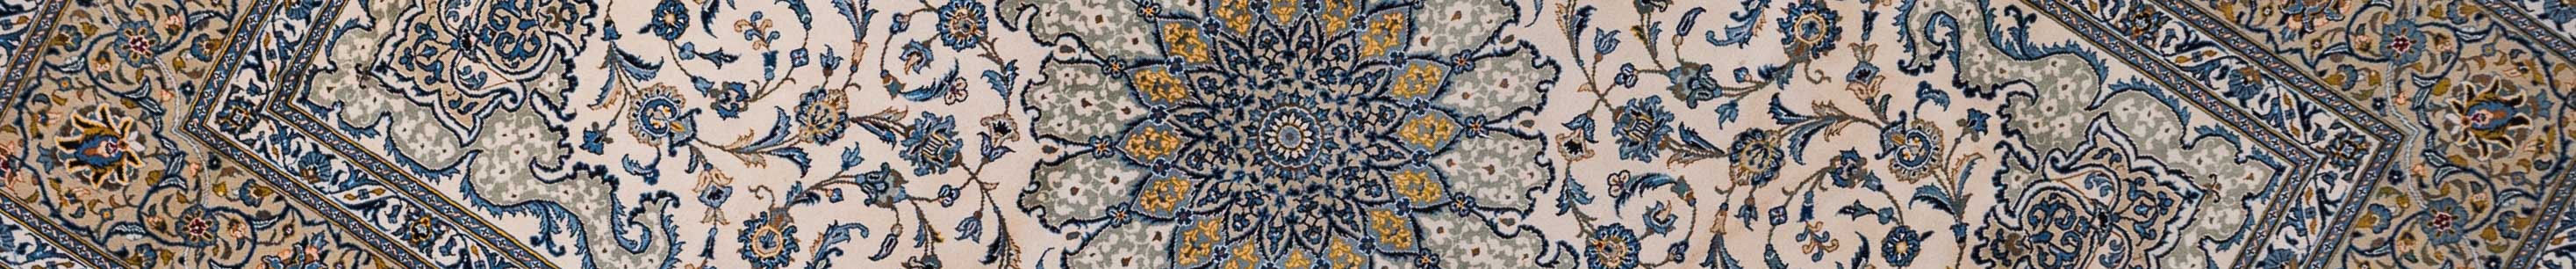 Kashan Persian Carpet Rug N1Carpet Canada Montreal Tapis Persan 2950